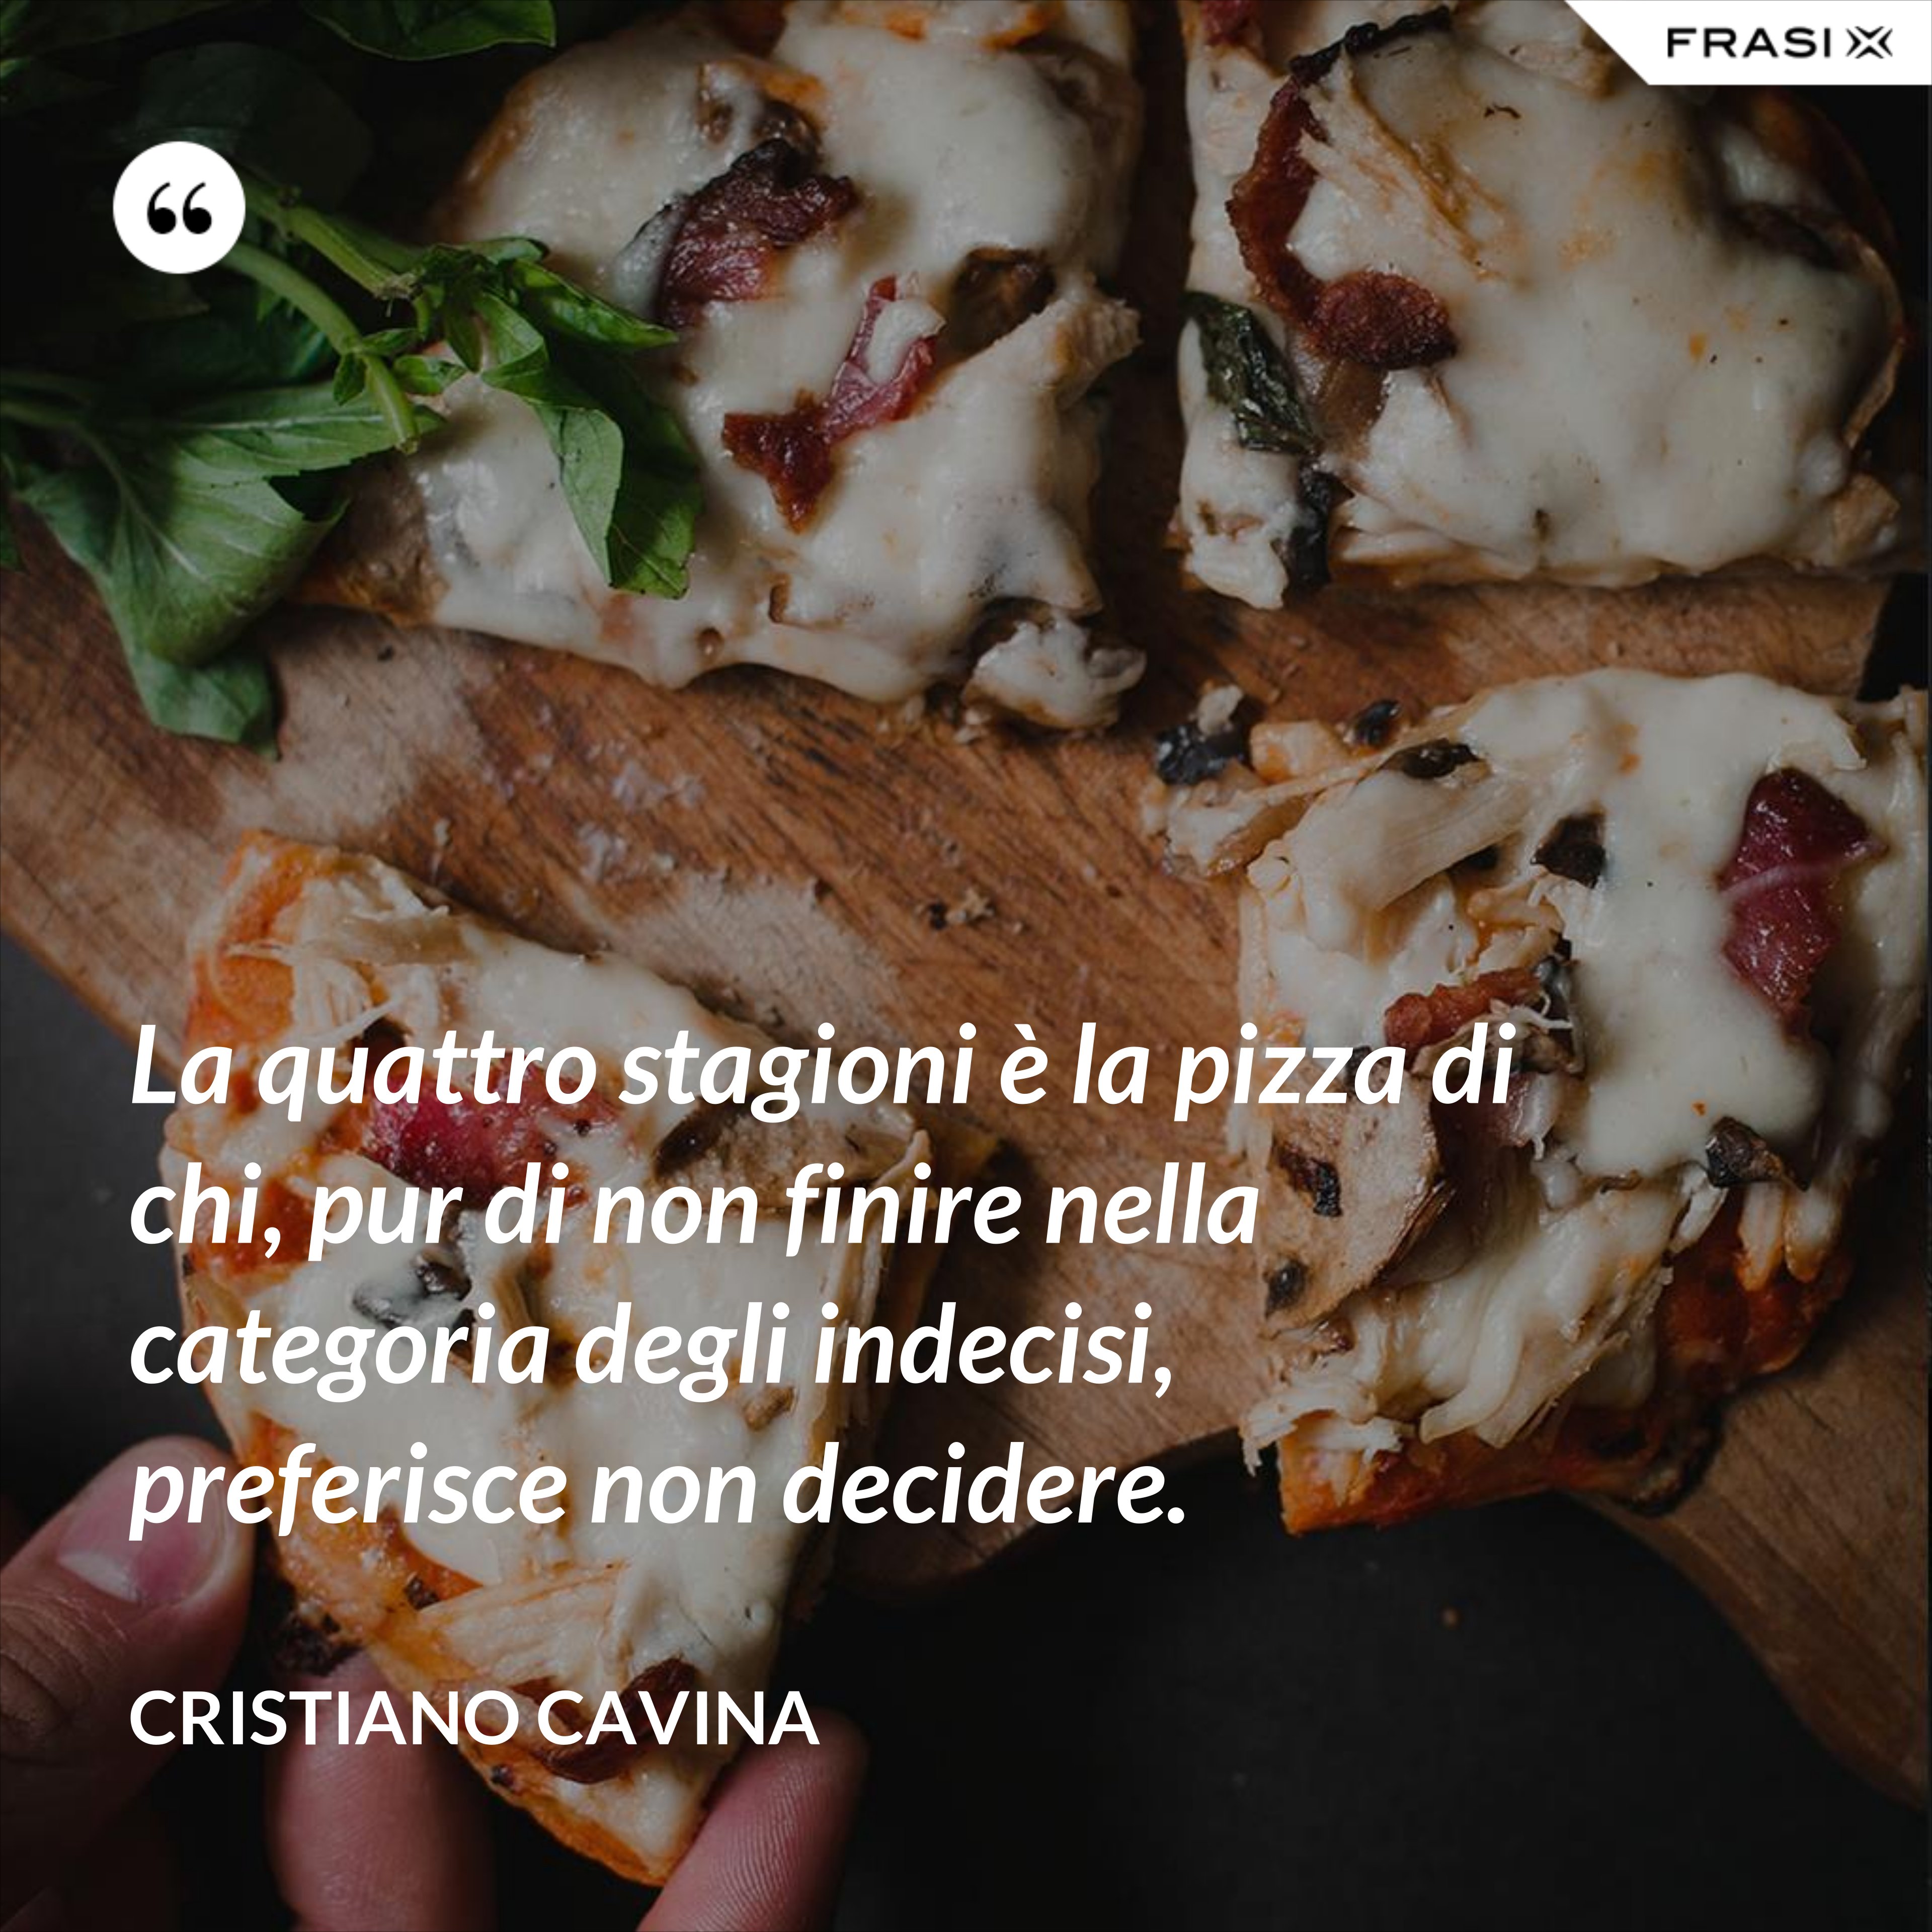 La quattro stagioni è la pizza di chi, pur di non finire nella categoria degli indecisi, preferisce non decidere. - Cristiano Cavina